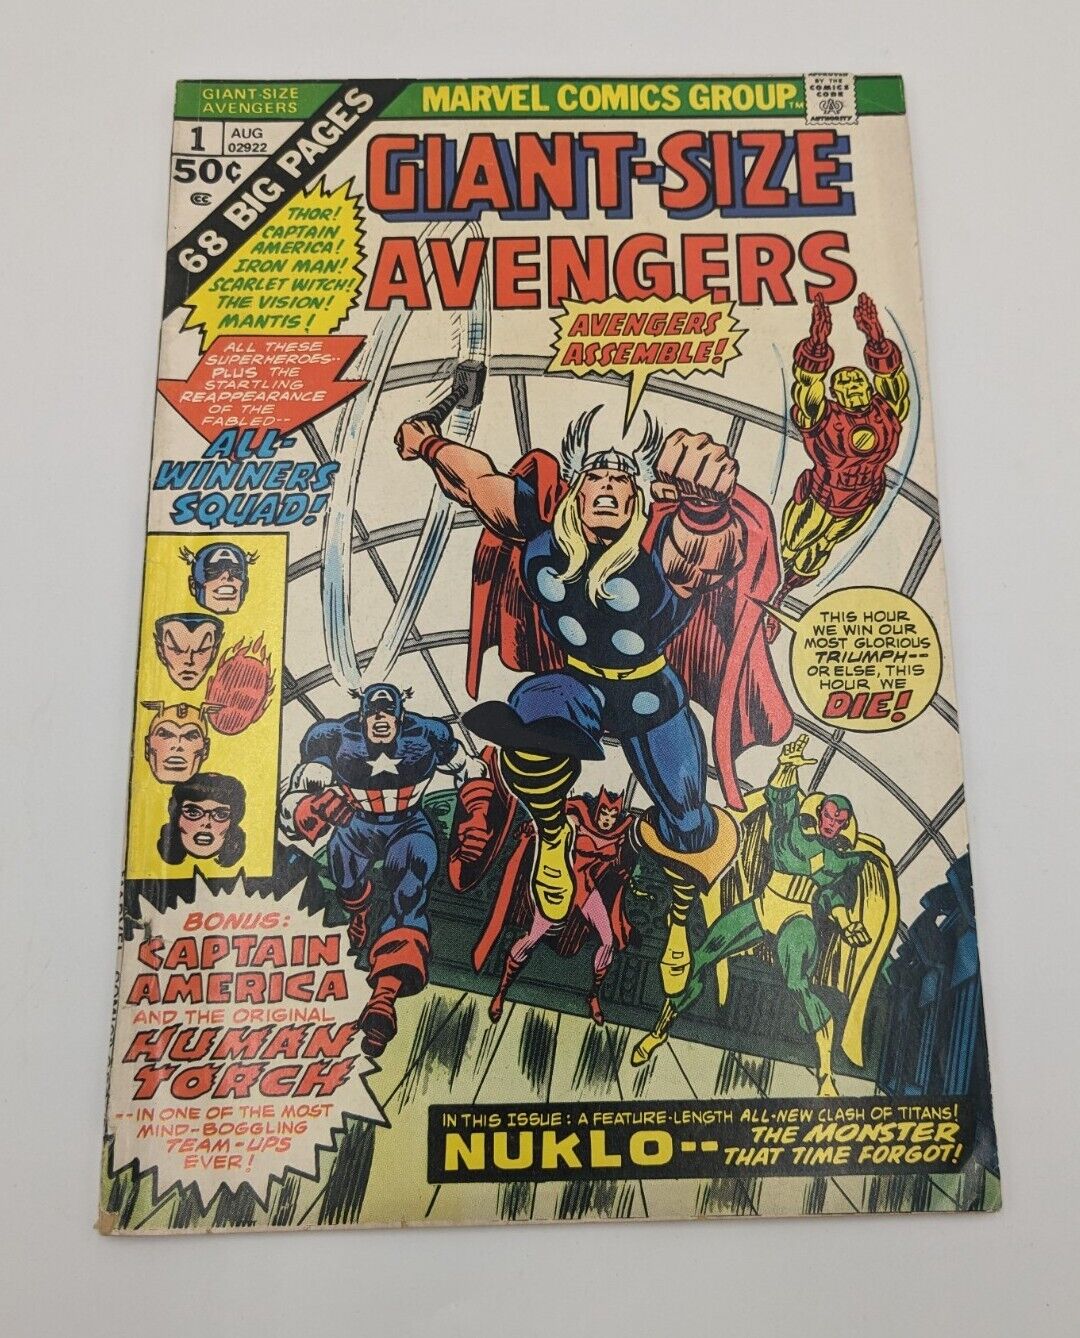 Avengers Giant Size #1 (VG) 1st App of Nuklo, son of Whizzer Marvel 1974